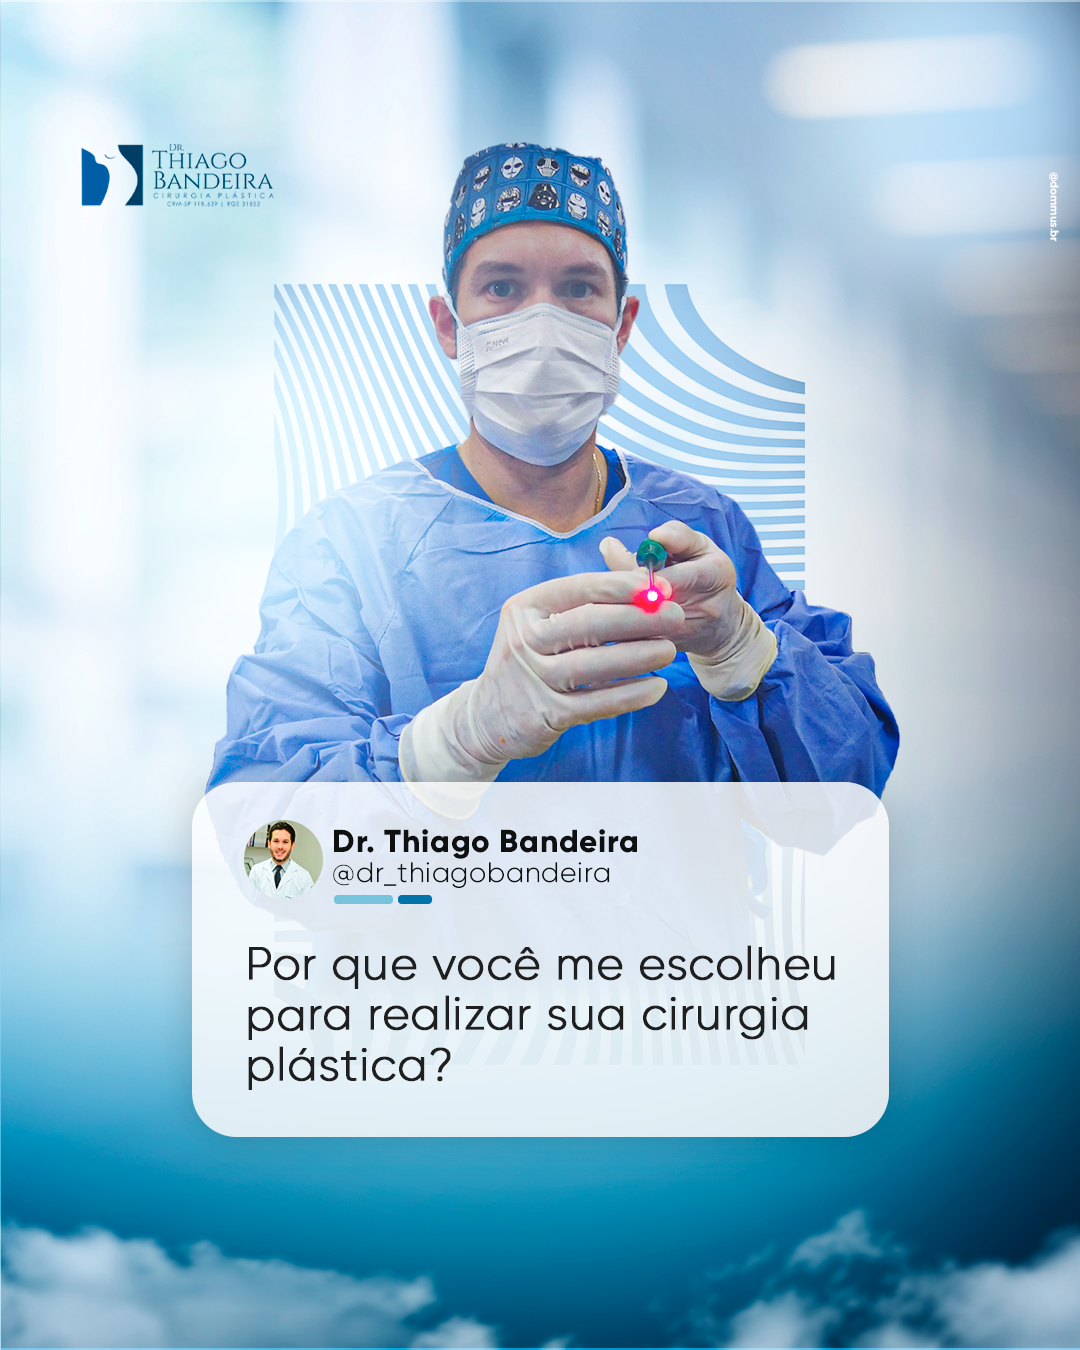 Um doutor utilizando mascara, com roupa de cirurgia, utilizando uma seringa na mão, e uma pergunta do instagram como descrição: "Por que você me escolheu para realizar sua cirurgia plástica?" - Dr Thiago Bandeira